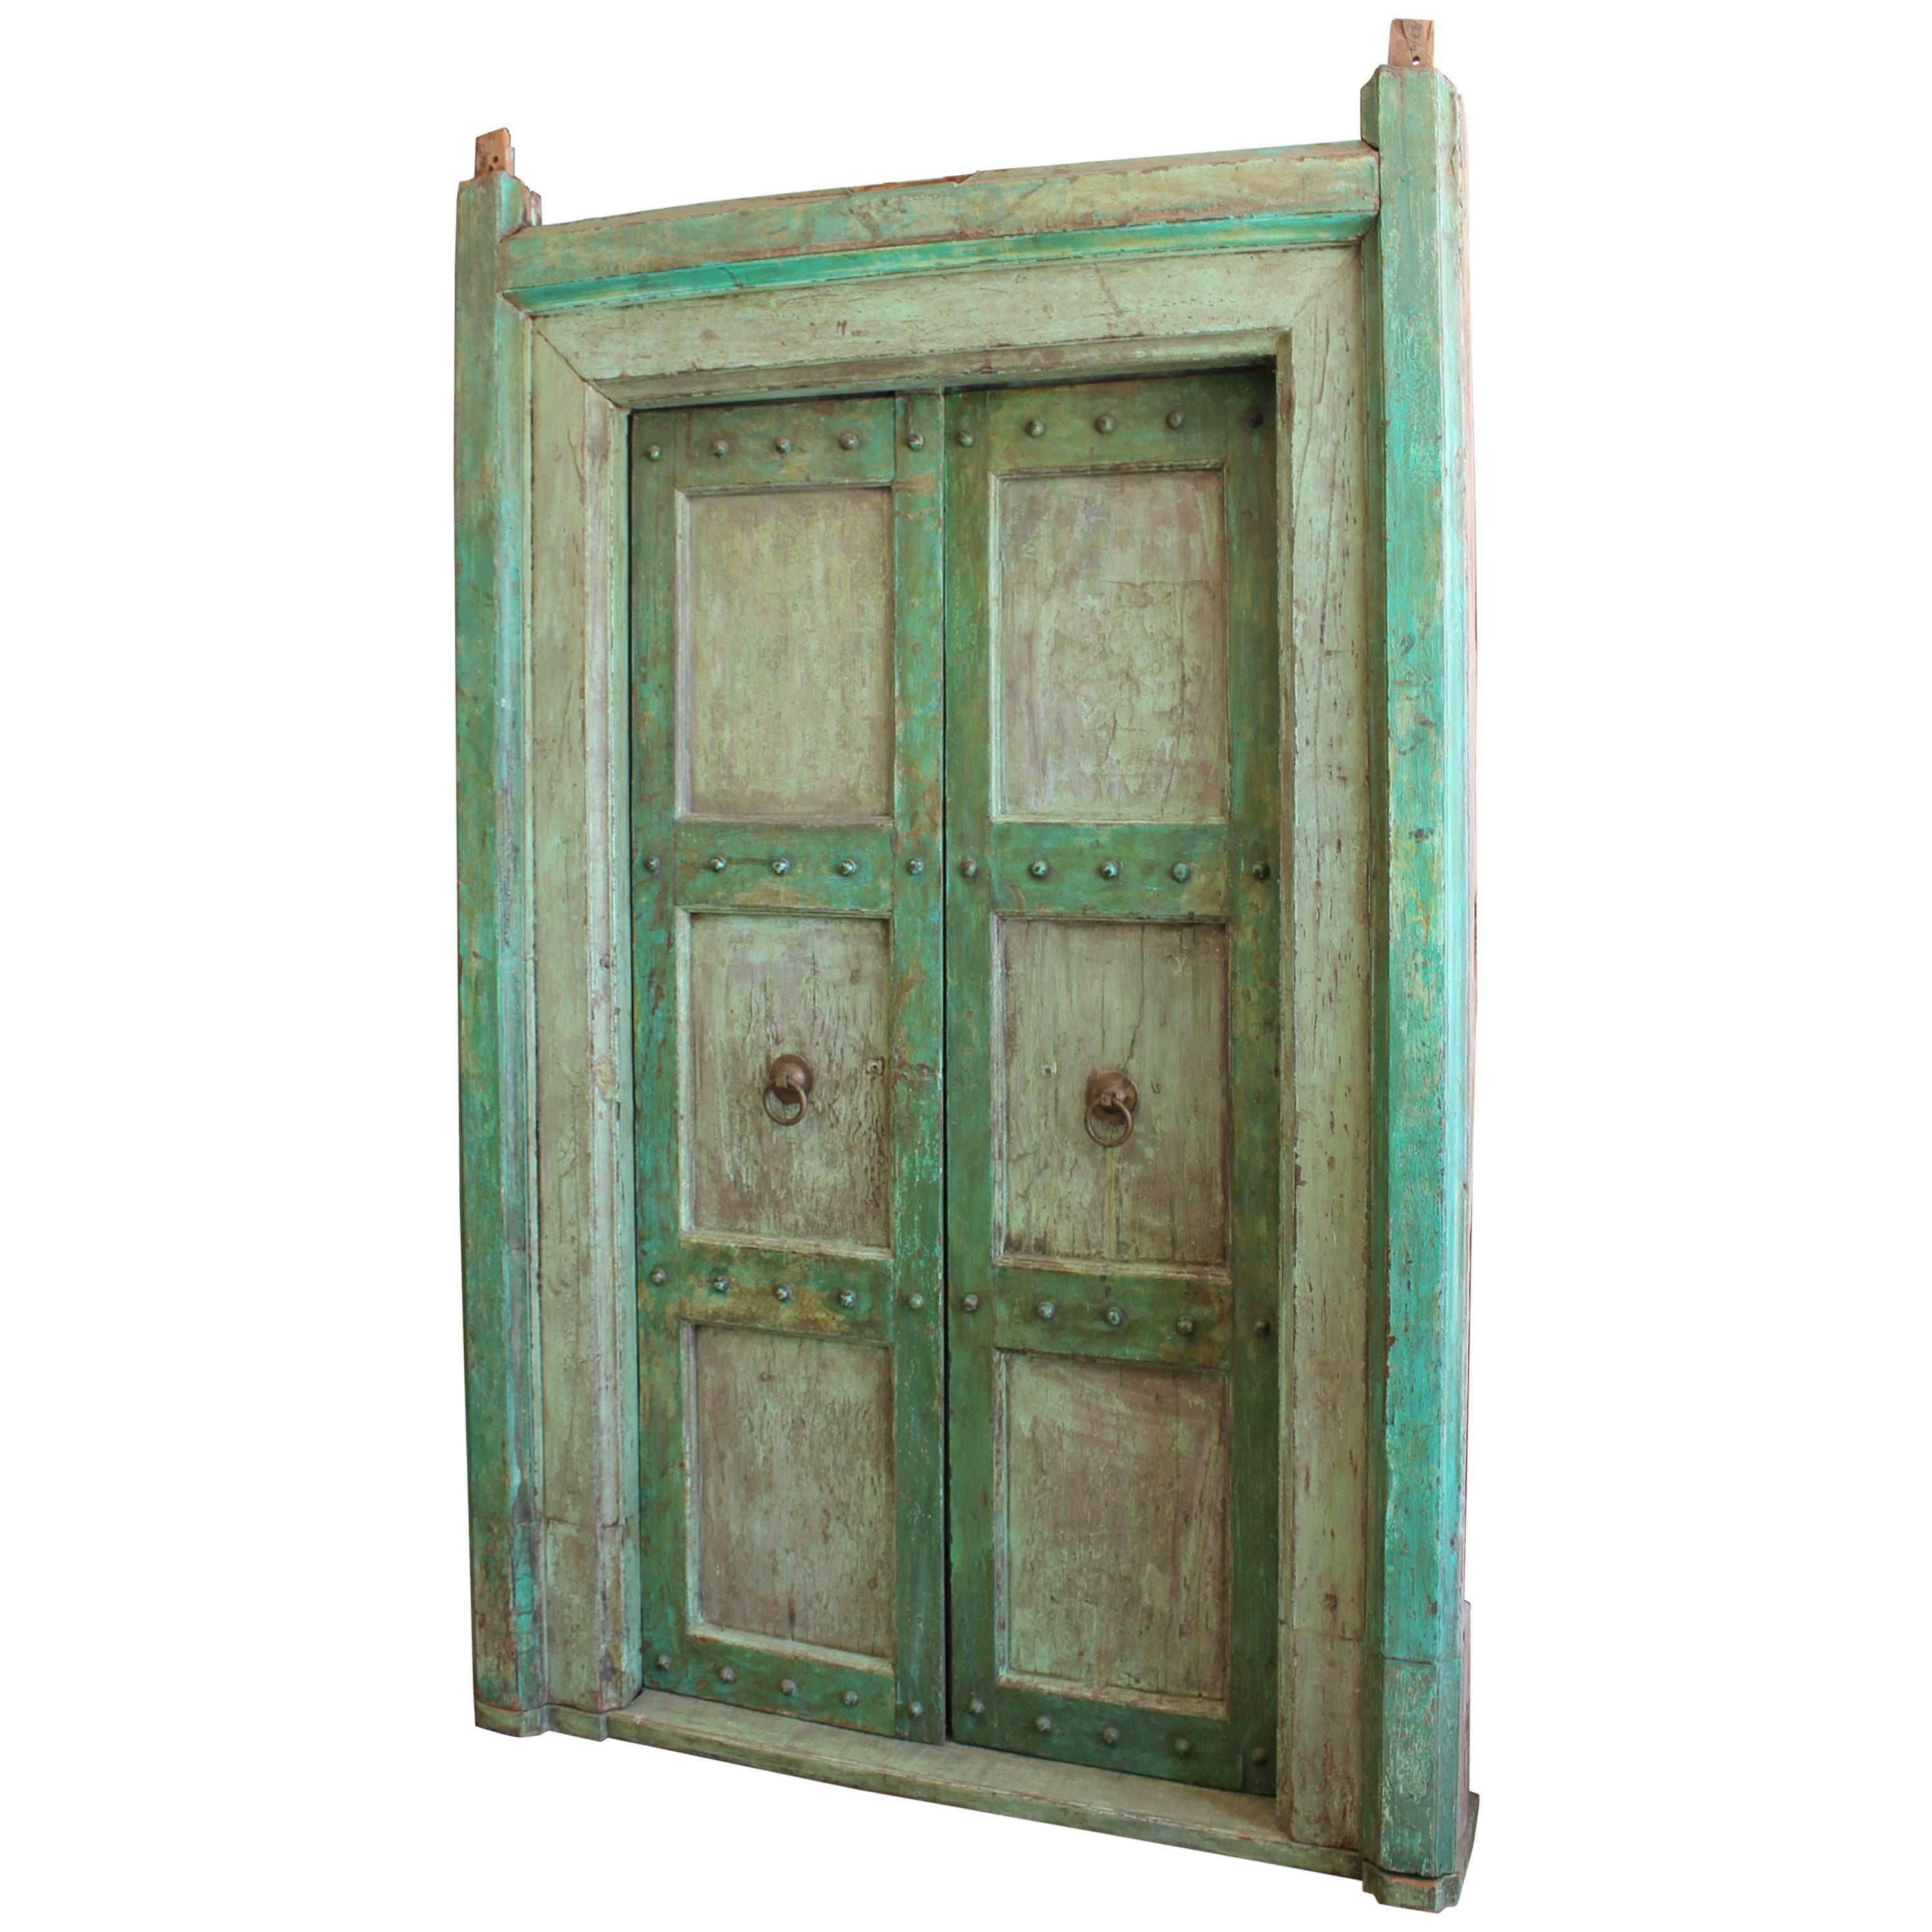 Portes et encadrements de portes peints en vert pâle de style néoclassique indien